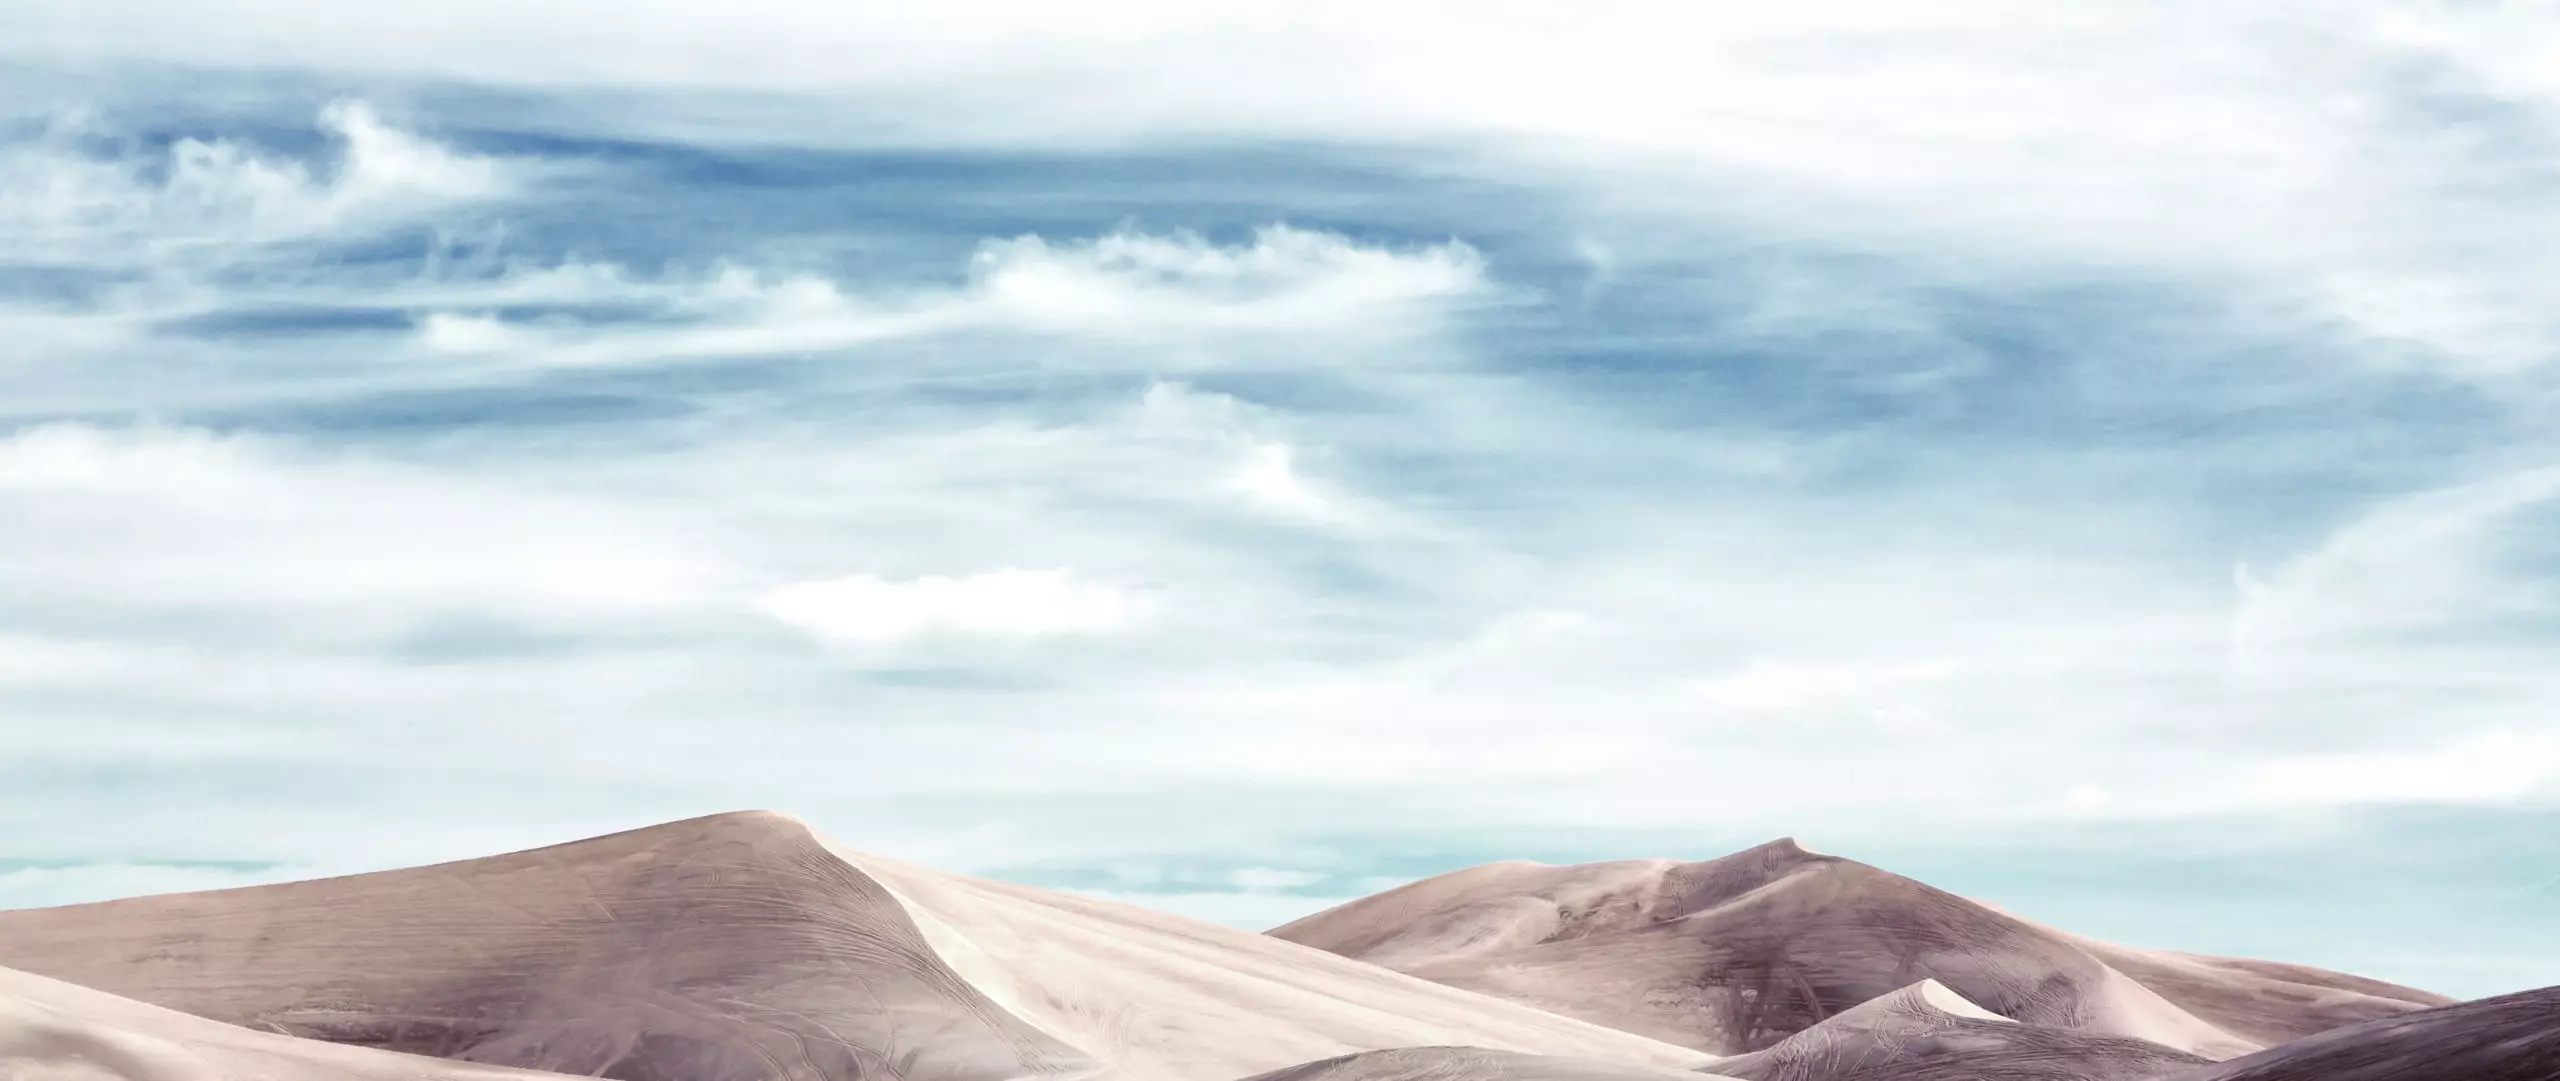 Wandbild (4484) blue sands desert 3 präsentiert: Landschaften,Berge